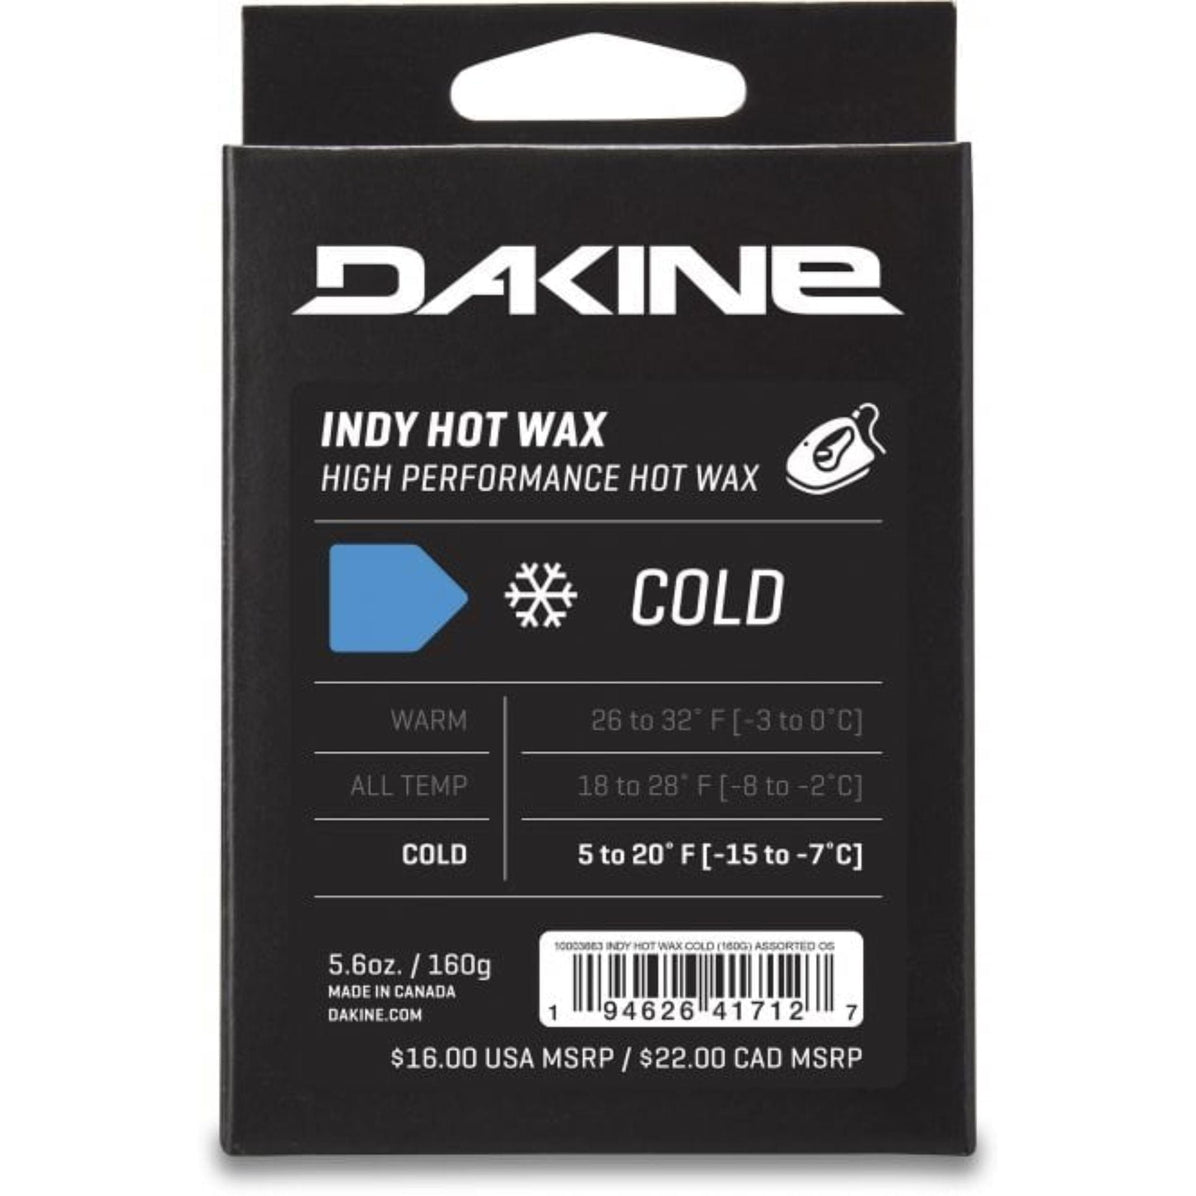 Dakine Indy Hot Wax Cold 160g